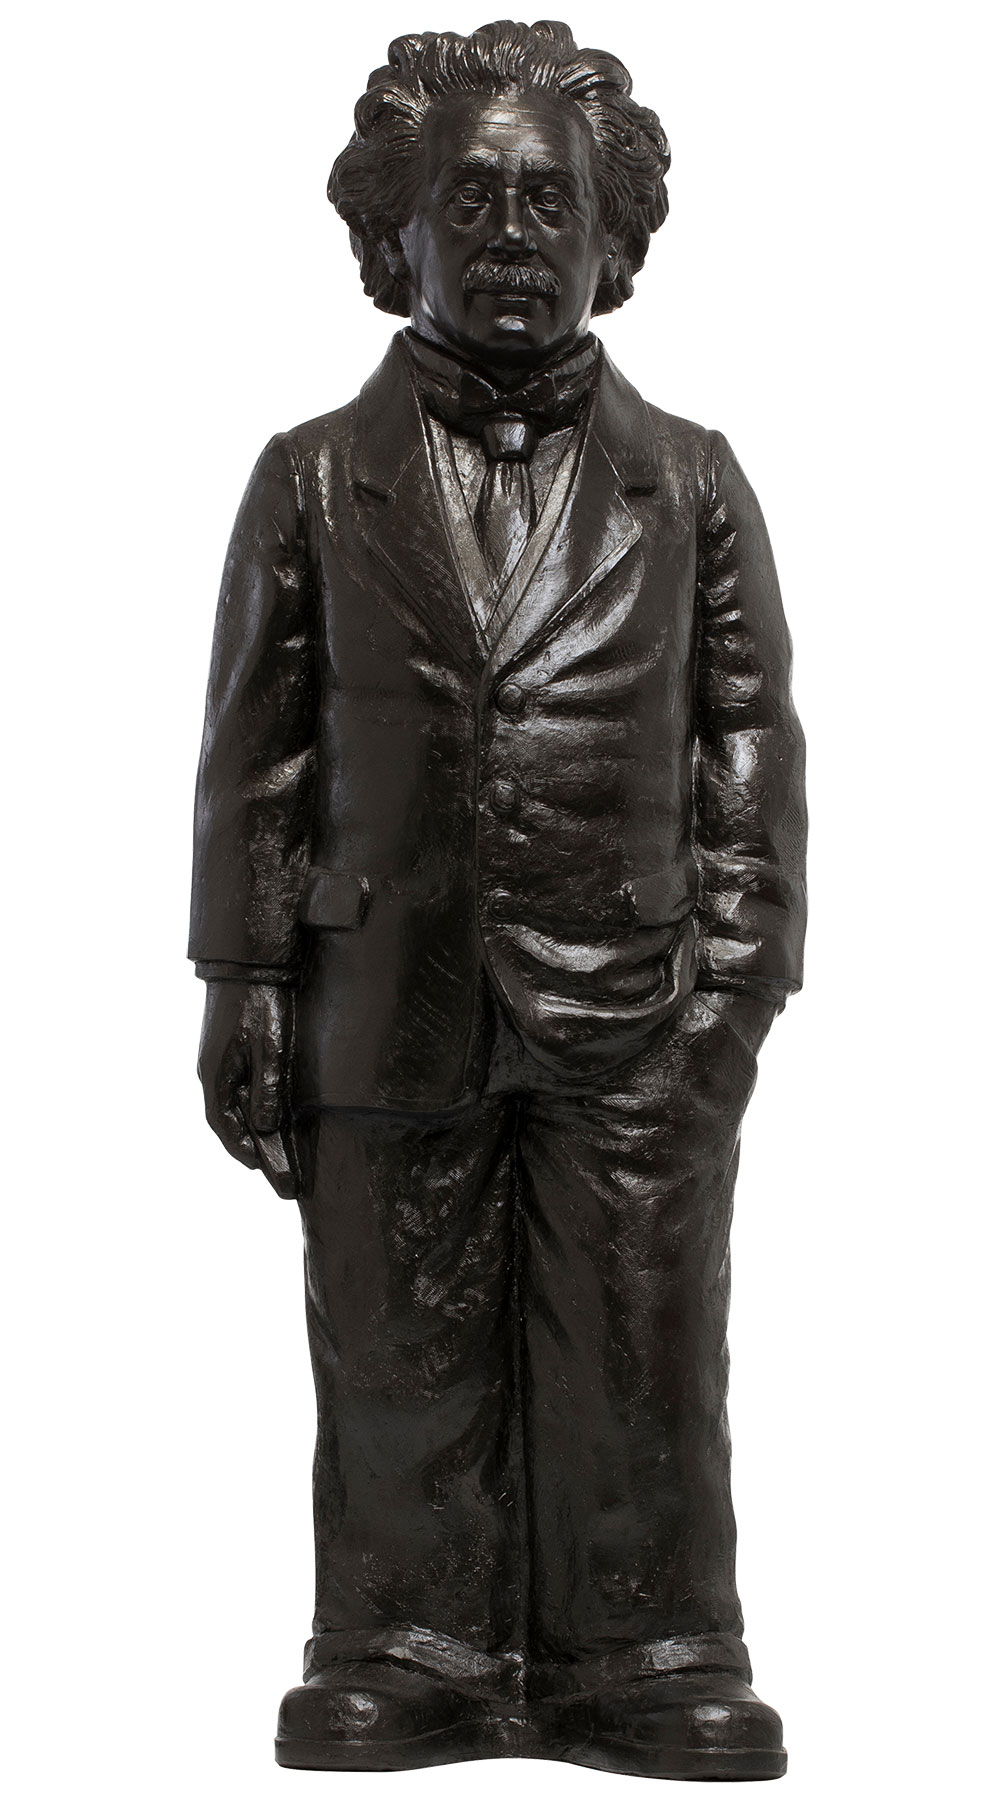 Sculpture "Albert Einstein" (2018), bronze colour version by Ottmar Hörl